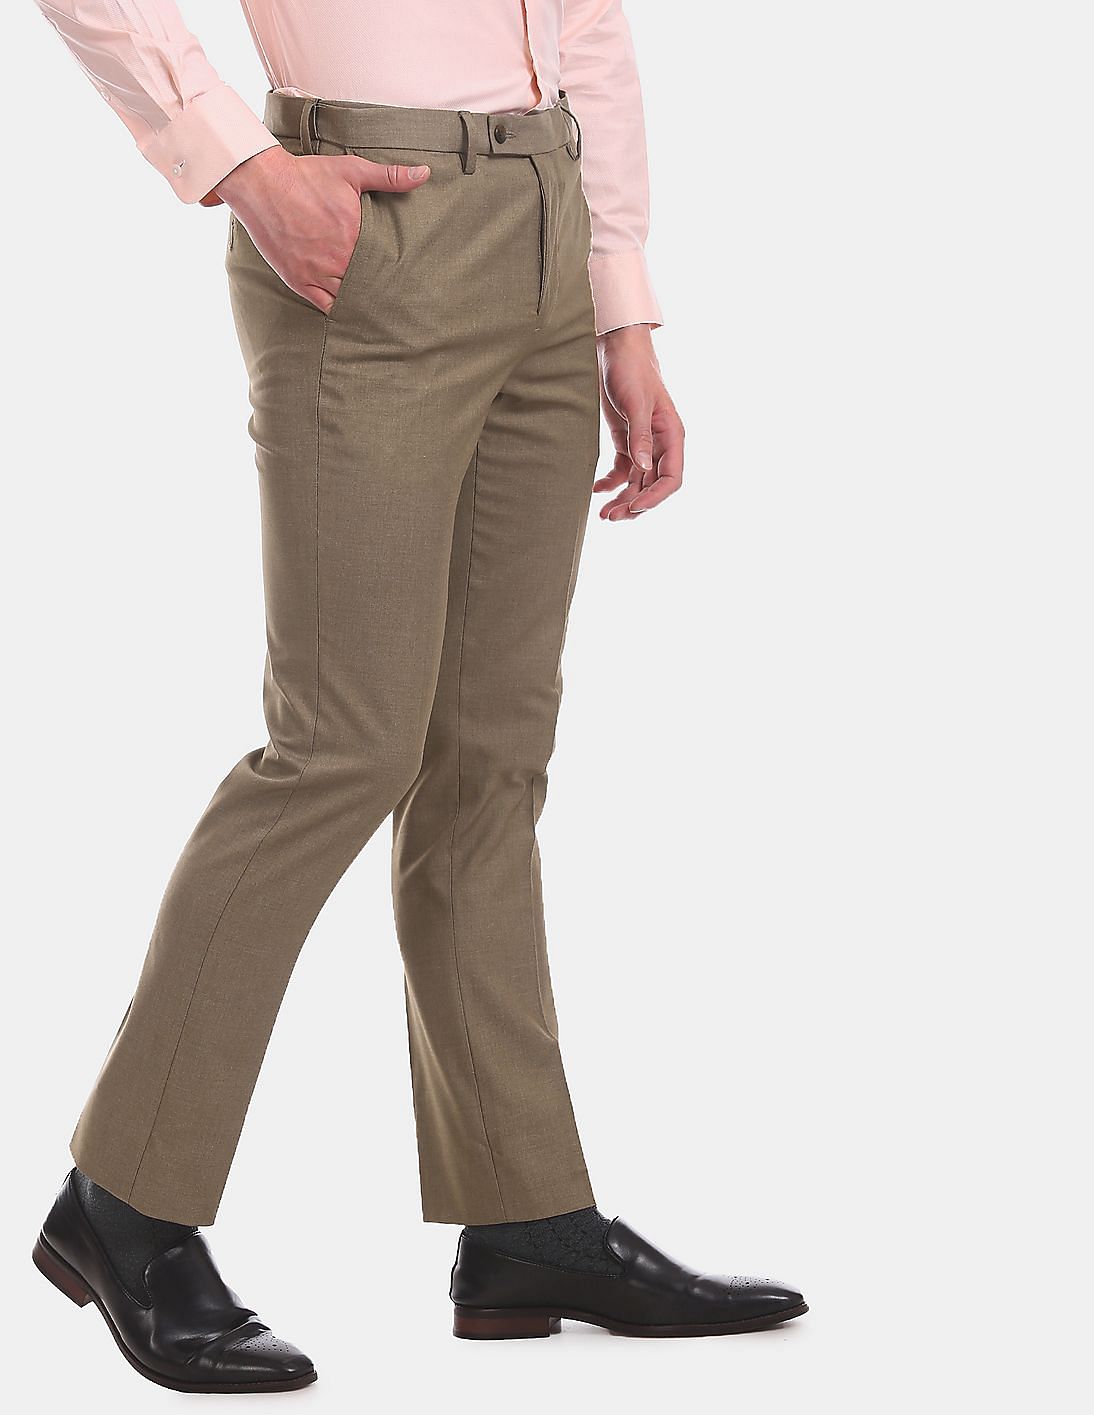 ARROW Auto Flex Regular Fit Men Brown Trousers  Buy ARROW Auto Flex  Regular Fit Men Brown Trousers Online at Best Prices in India  Flipkartcom